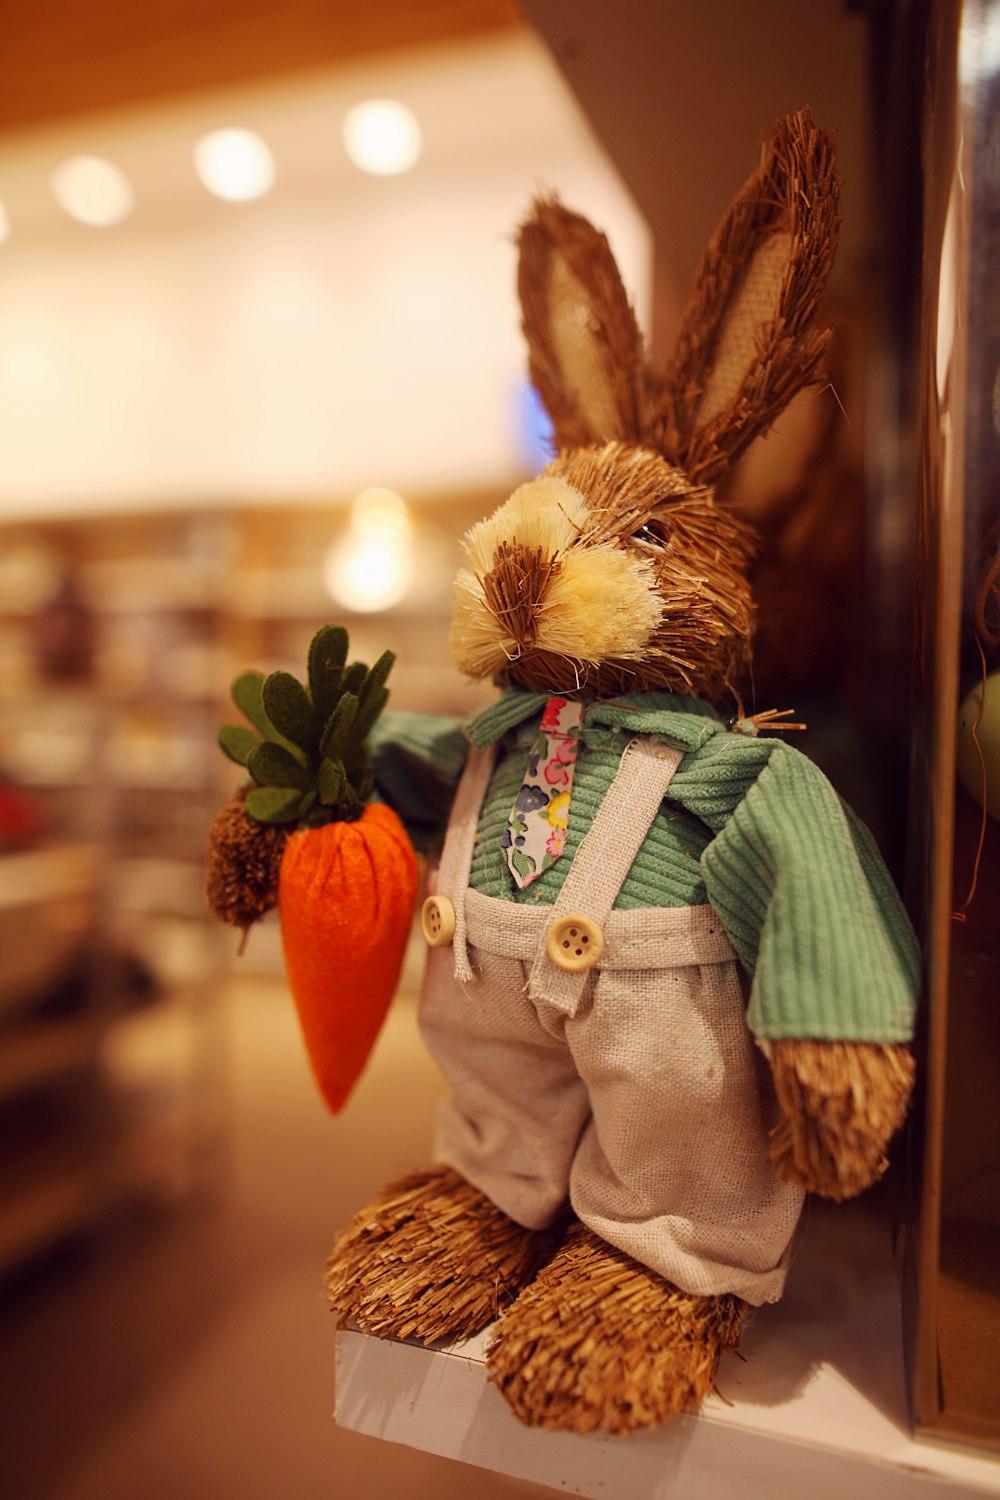 a stuffed rabbit holding a carrot on a shelf